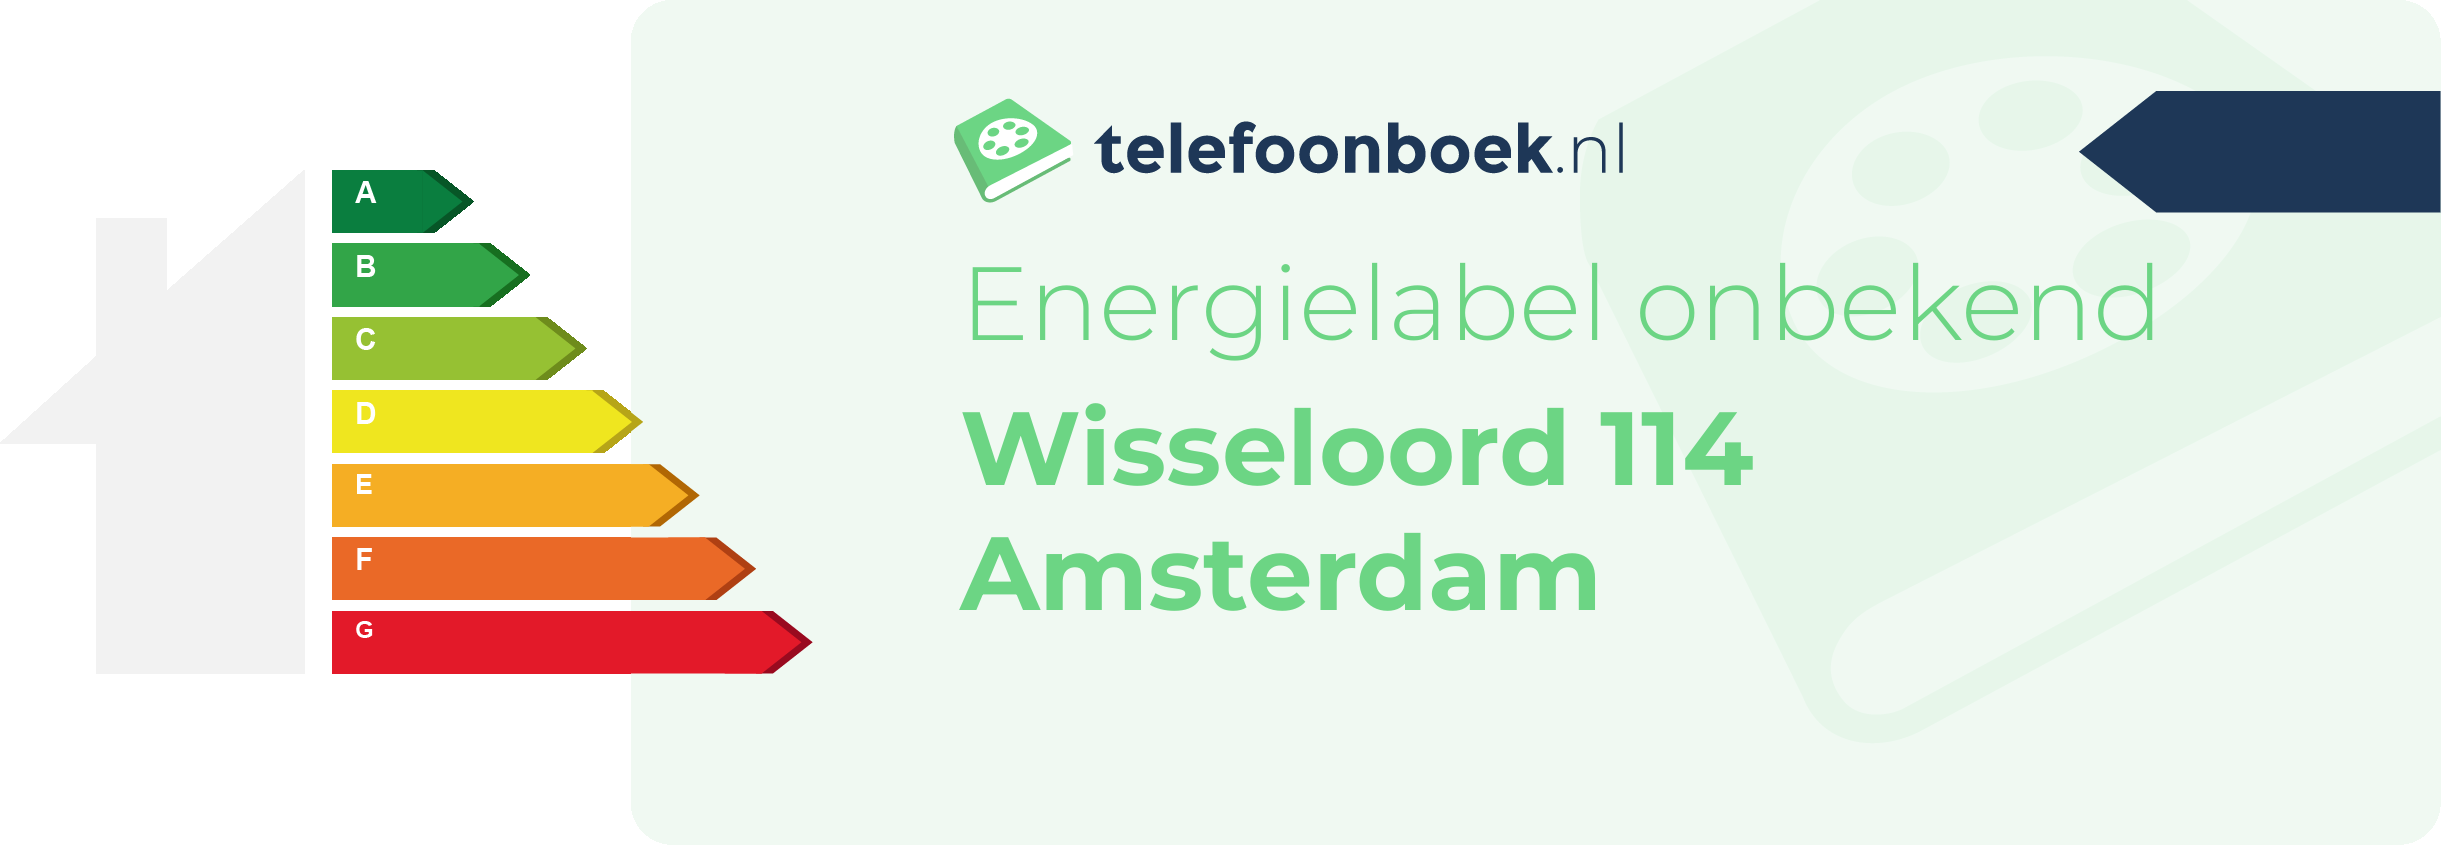 Energielabel Wisseloord 114 Amsterdam